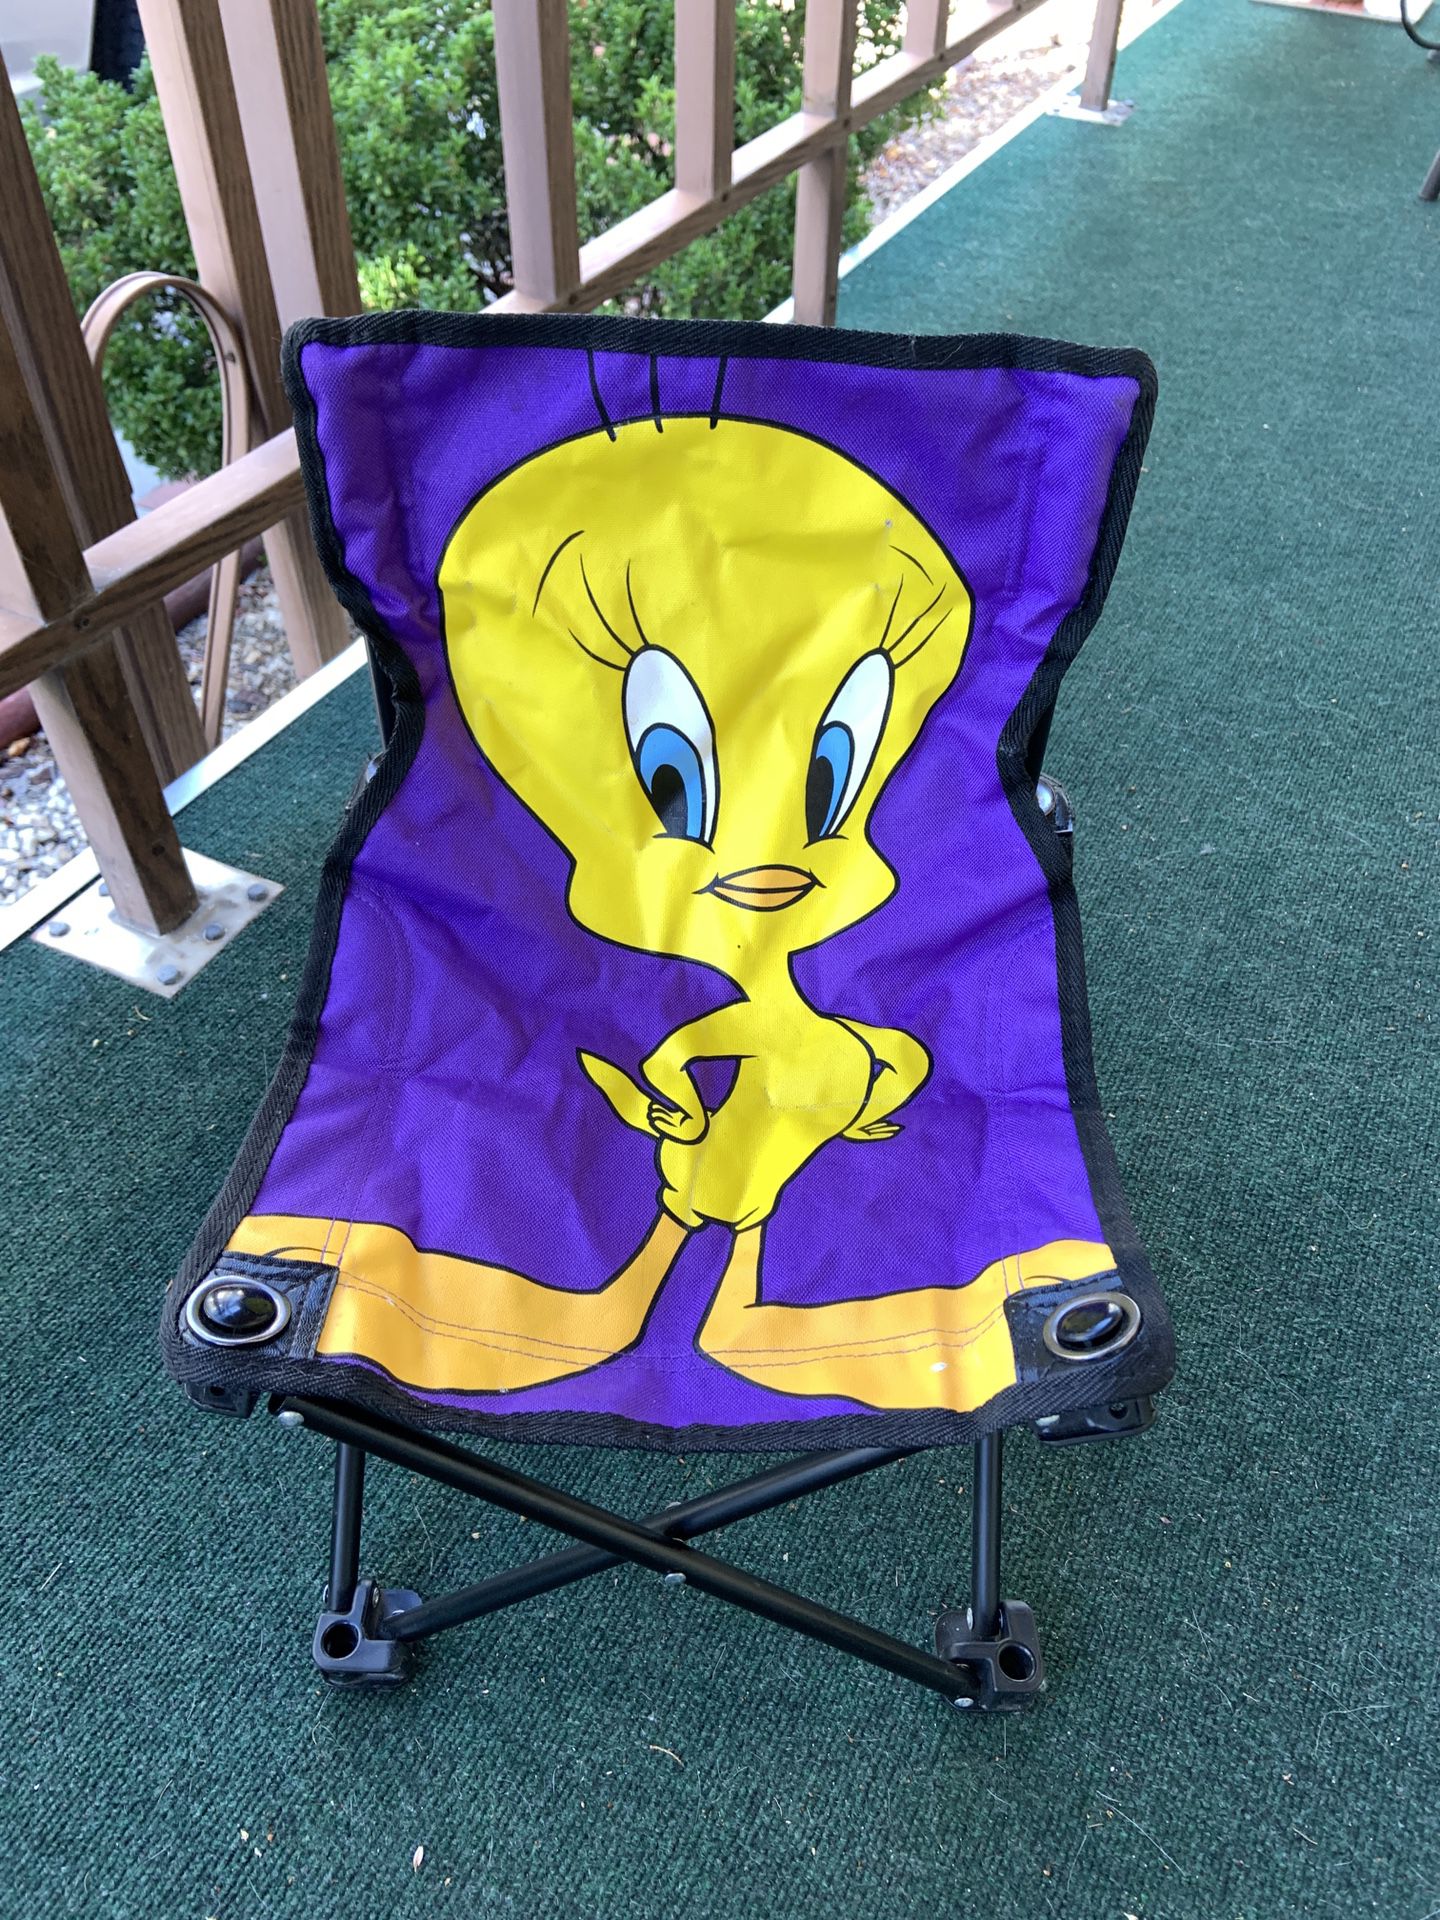 Looney Tunes Tweety Bird child’s chair